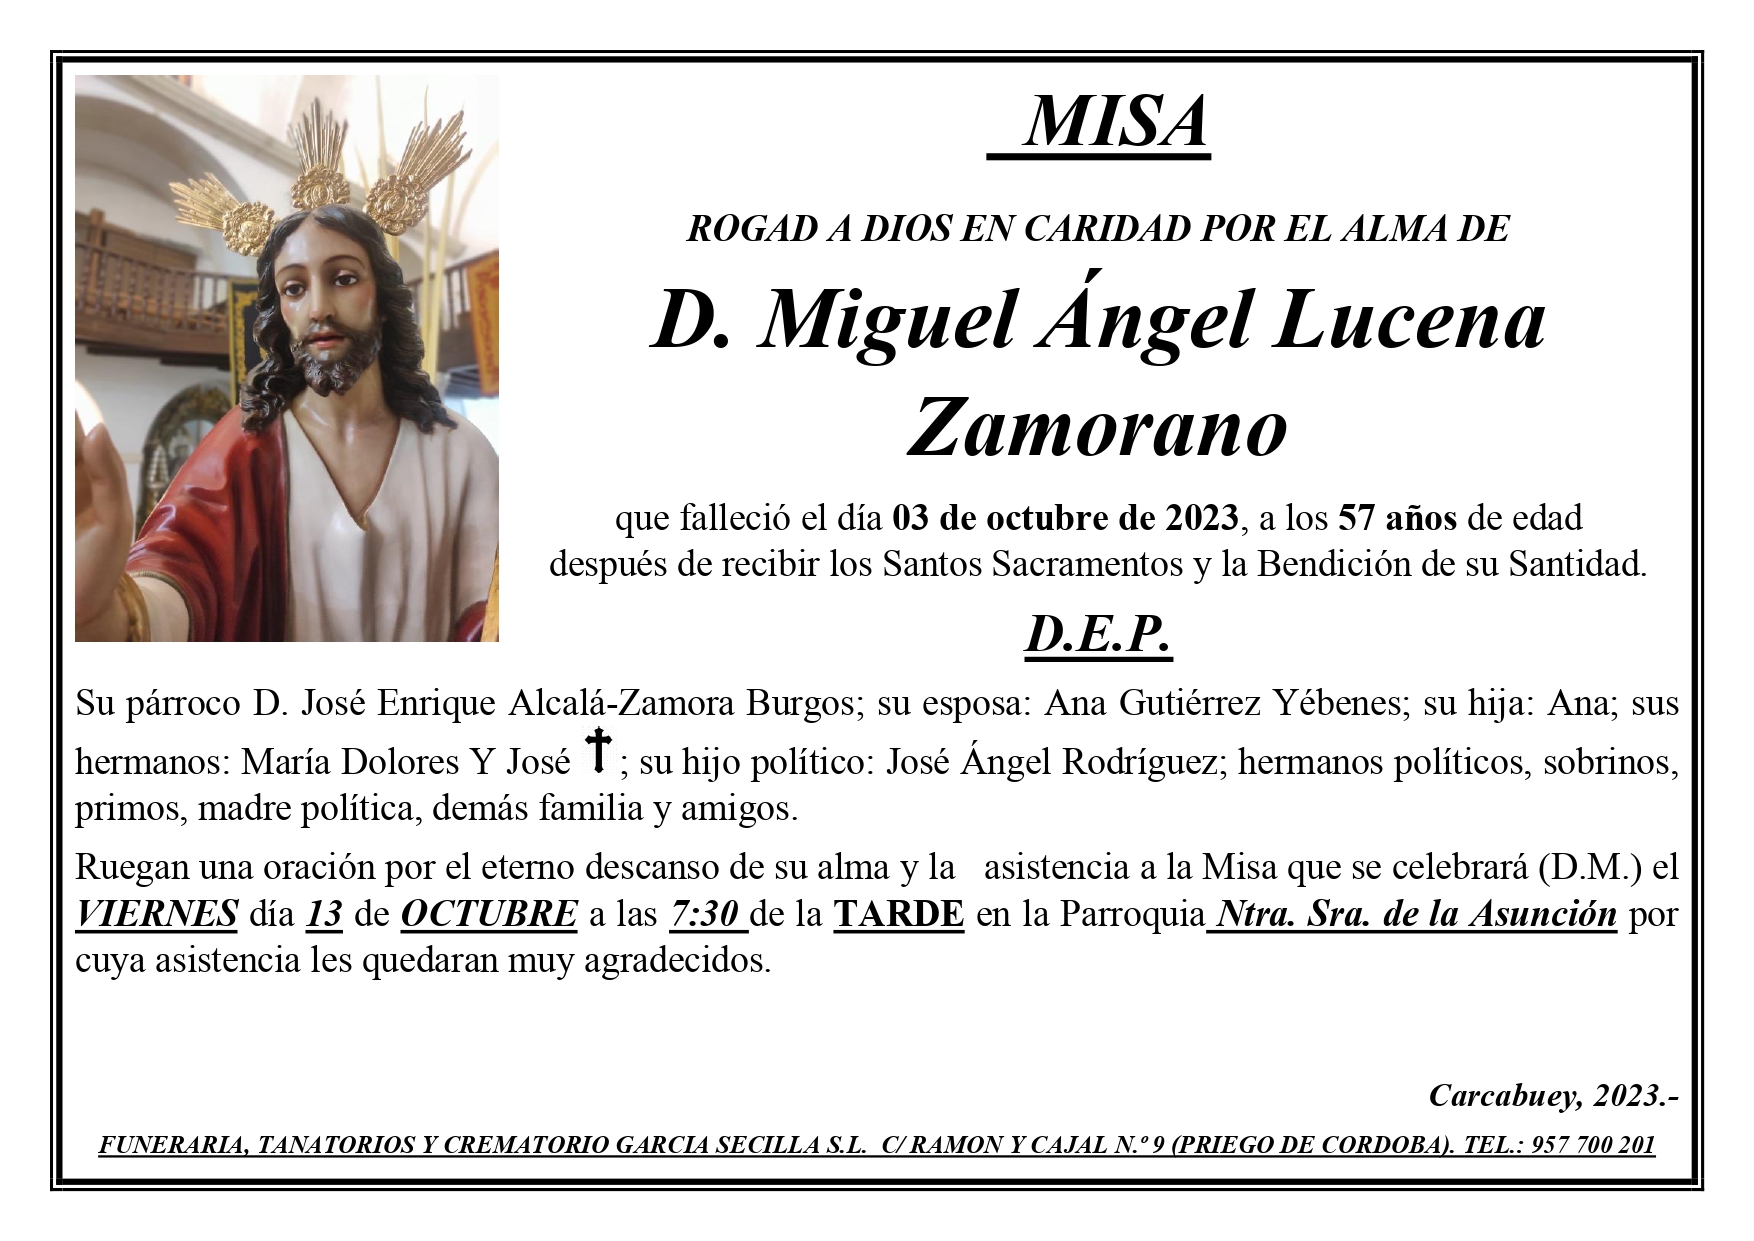 MISA DE MIGUEL ANGEL LUCENA ZAMORANO